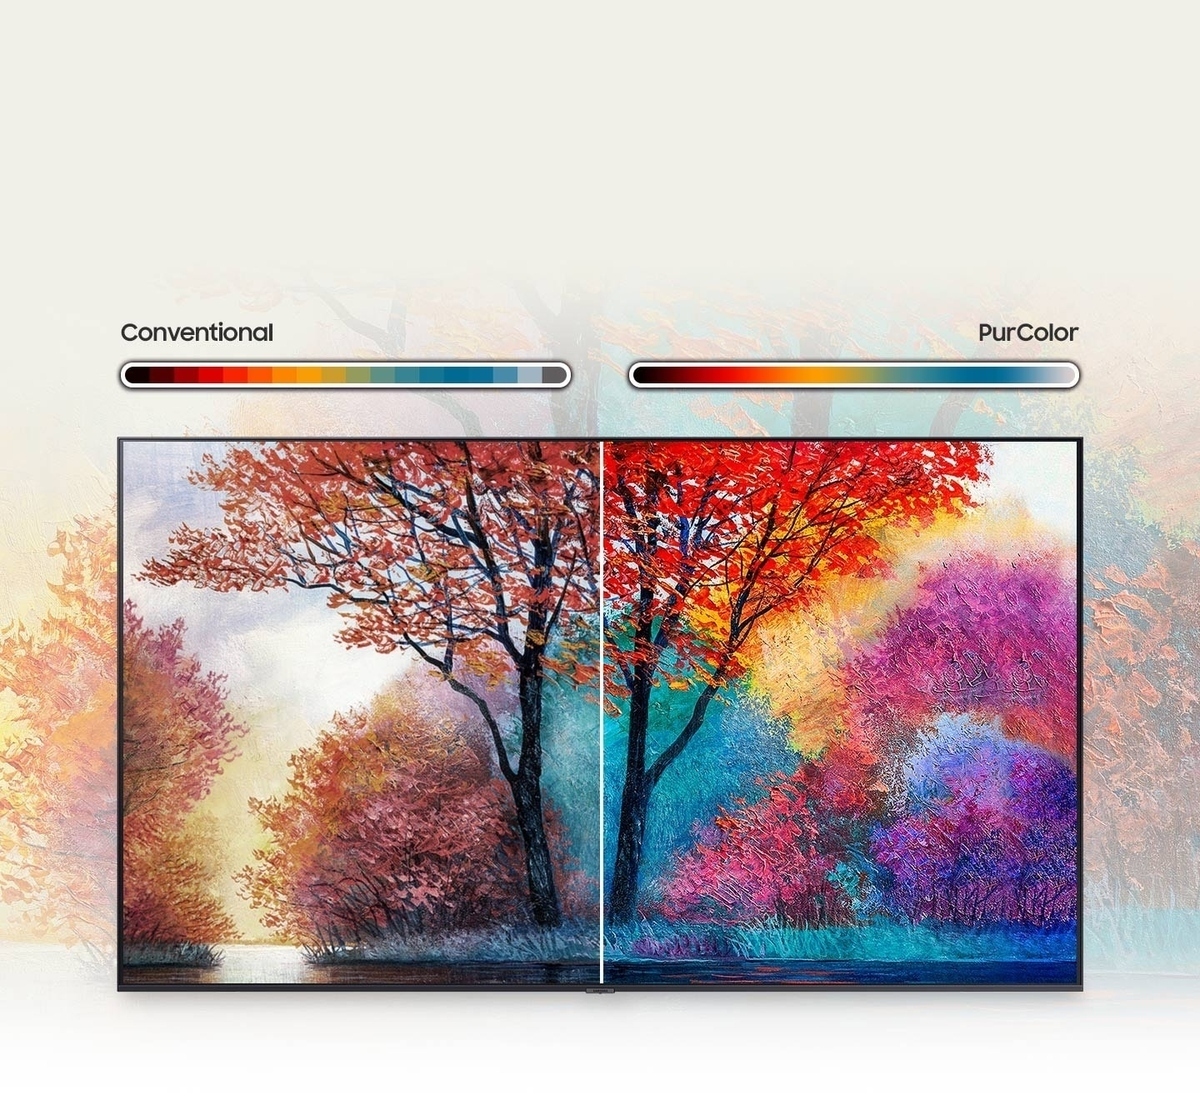 Pintura que está en la pantalla del Smart TV Samsung muestra una gama más amplia y viva de color gracias a la tecnología PurColor de los televisores Samsung Crystal UHD